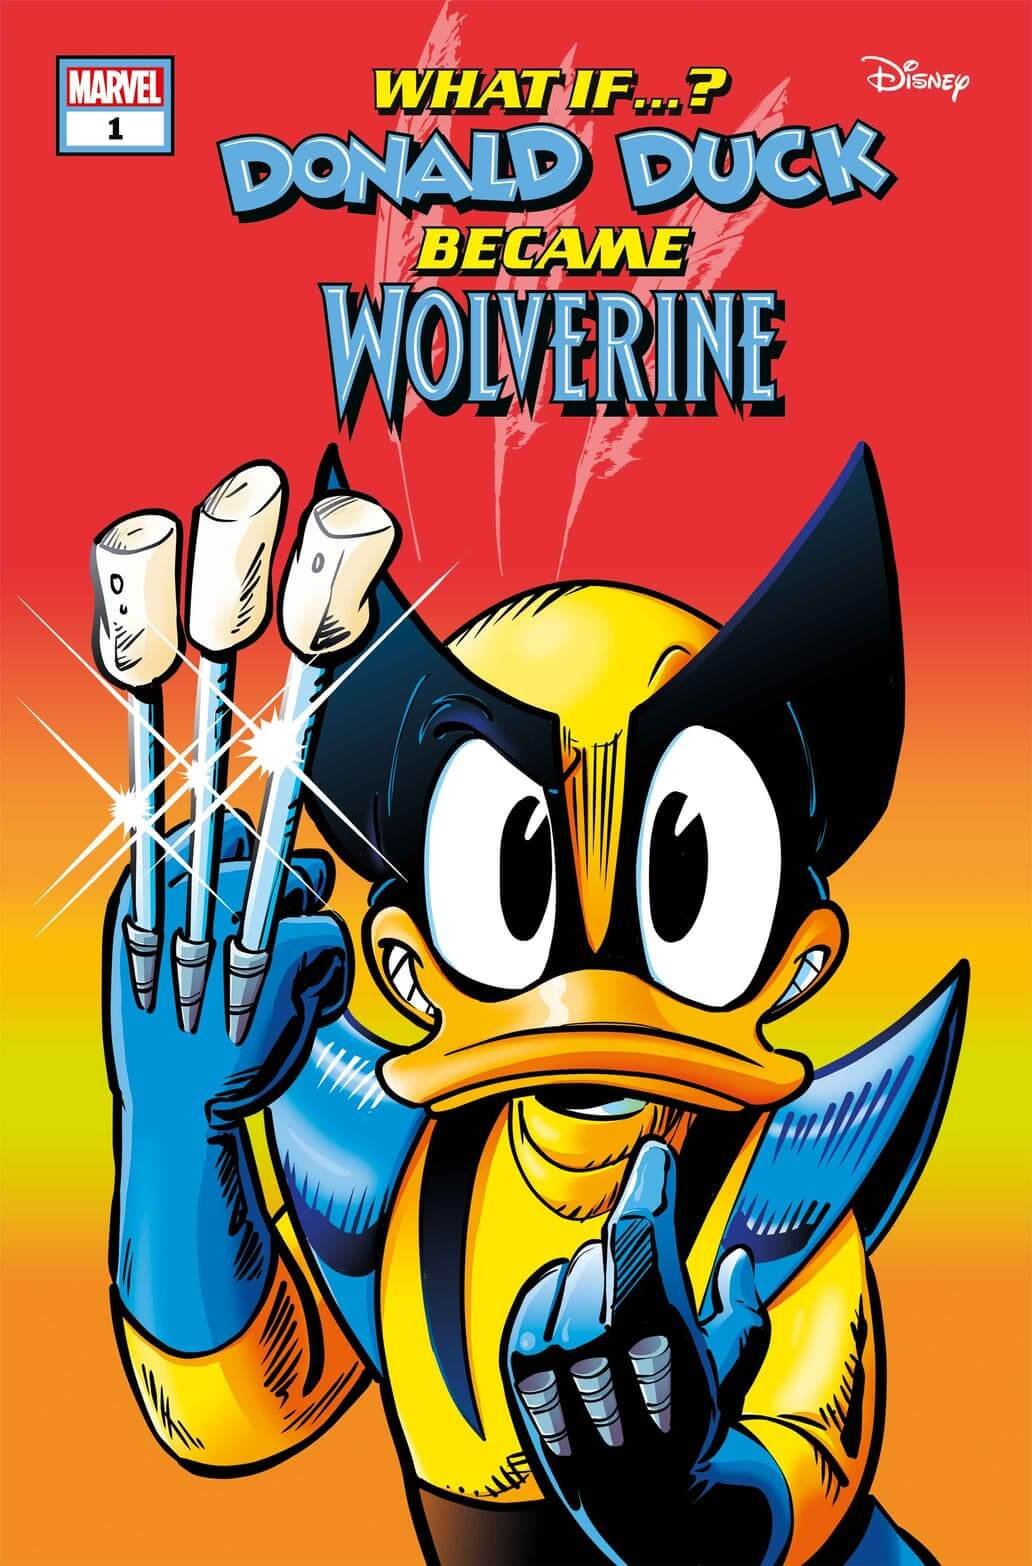 Couverture de Marvel &amp ; Disney : Et si... ? Donald Duck Became Wolverine par Giada Perissinotto, avec Donald Duck en Old Man Logan.